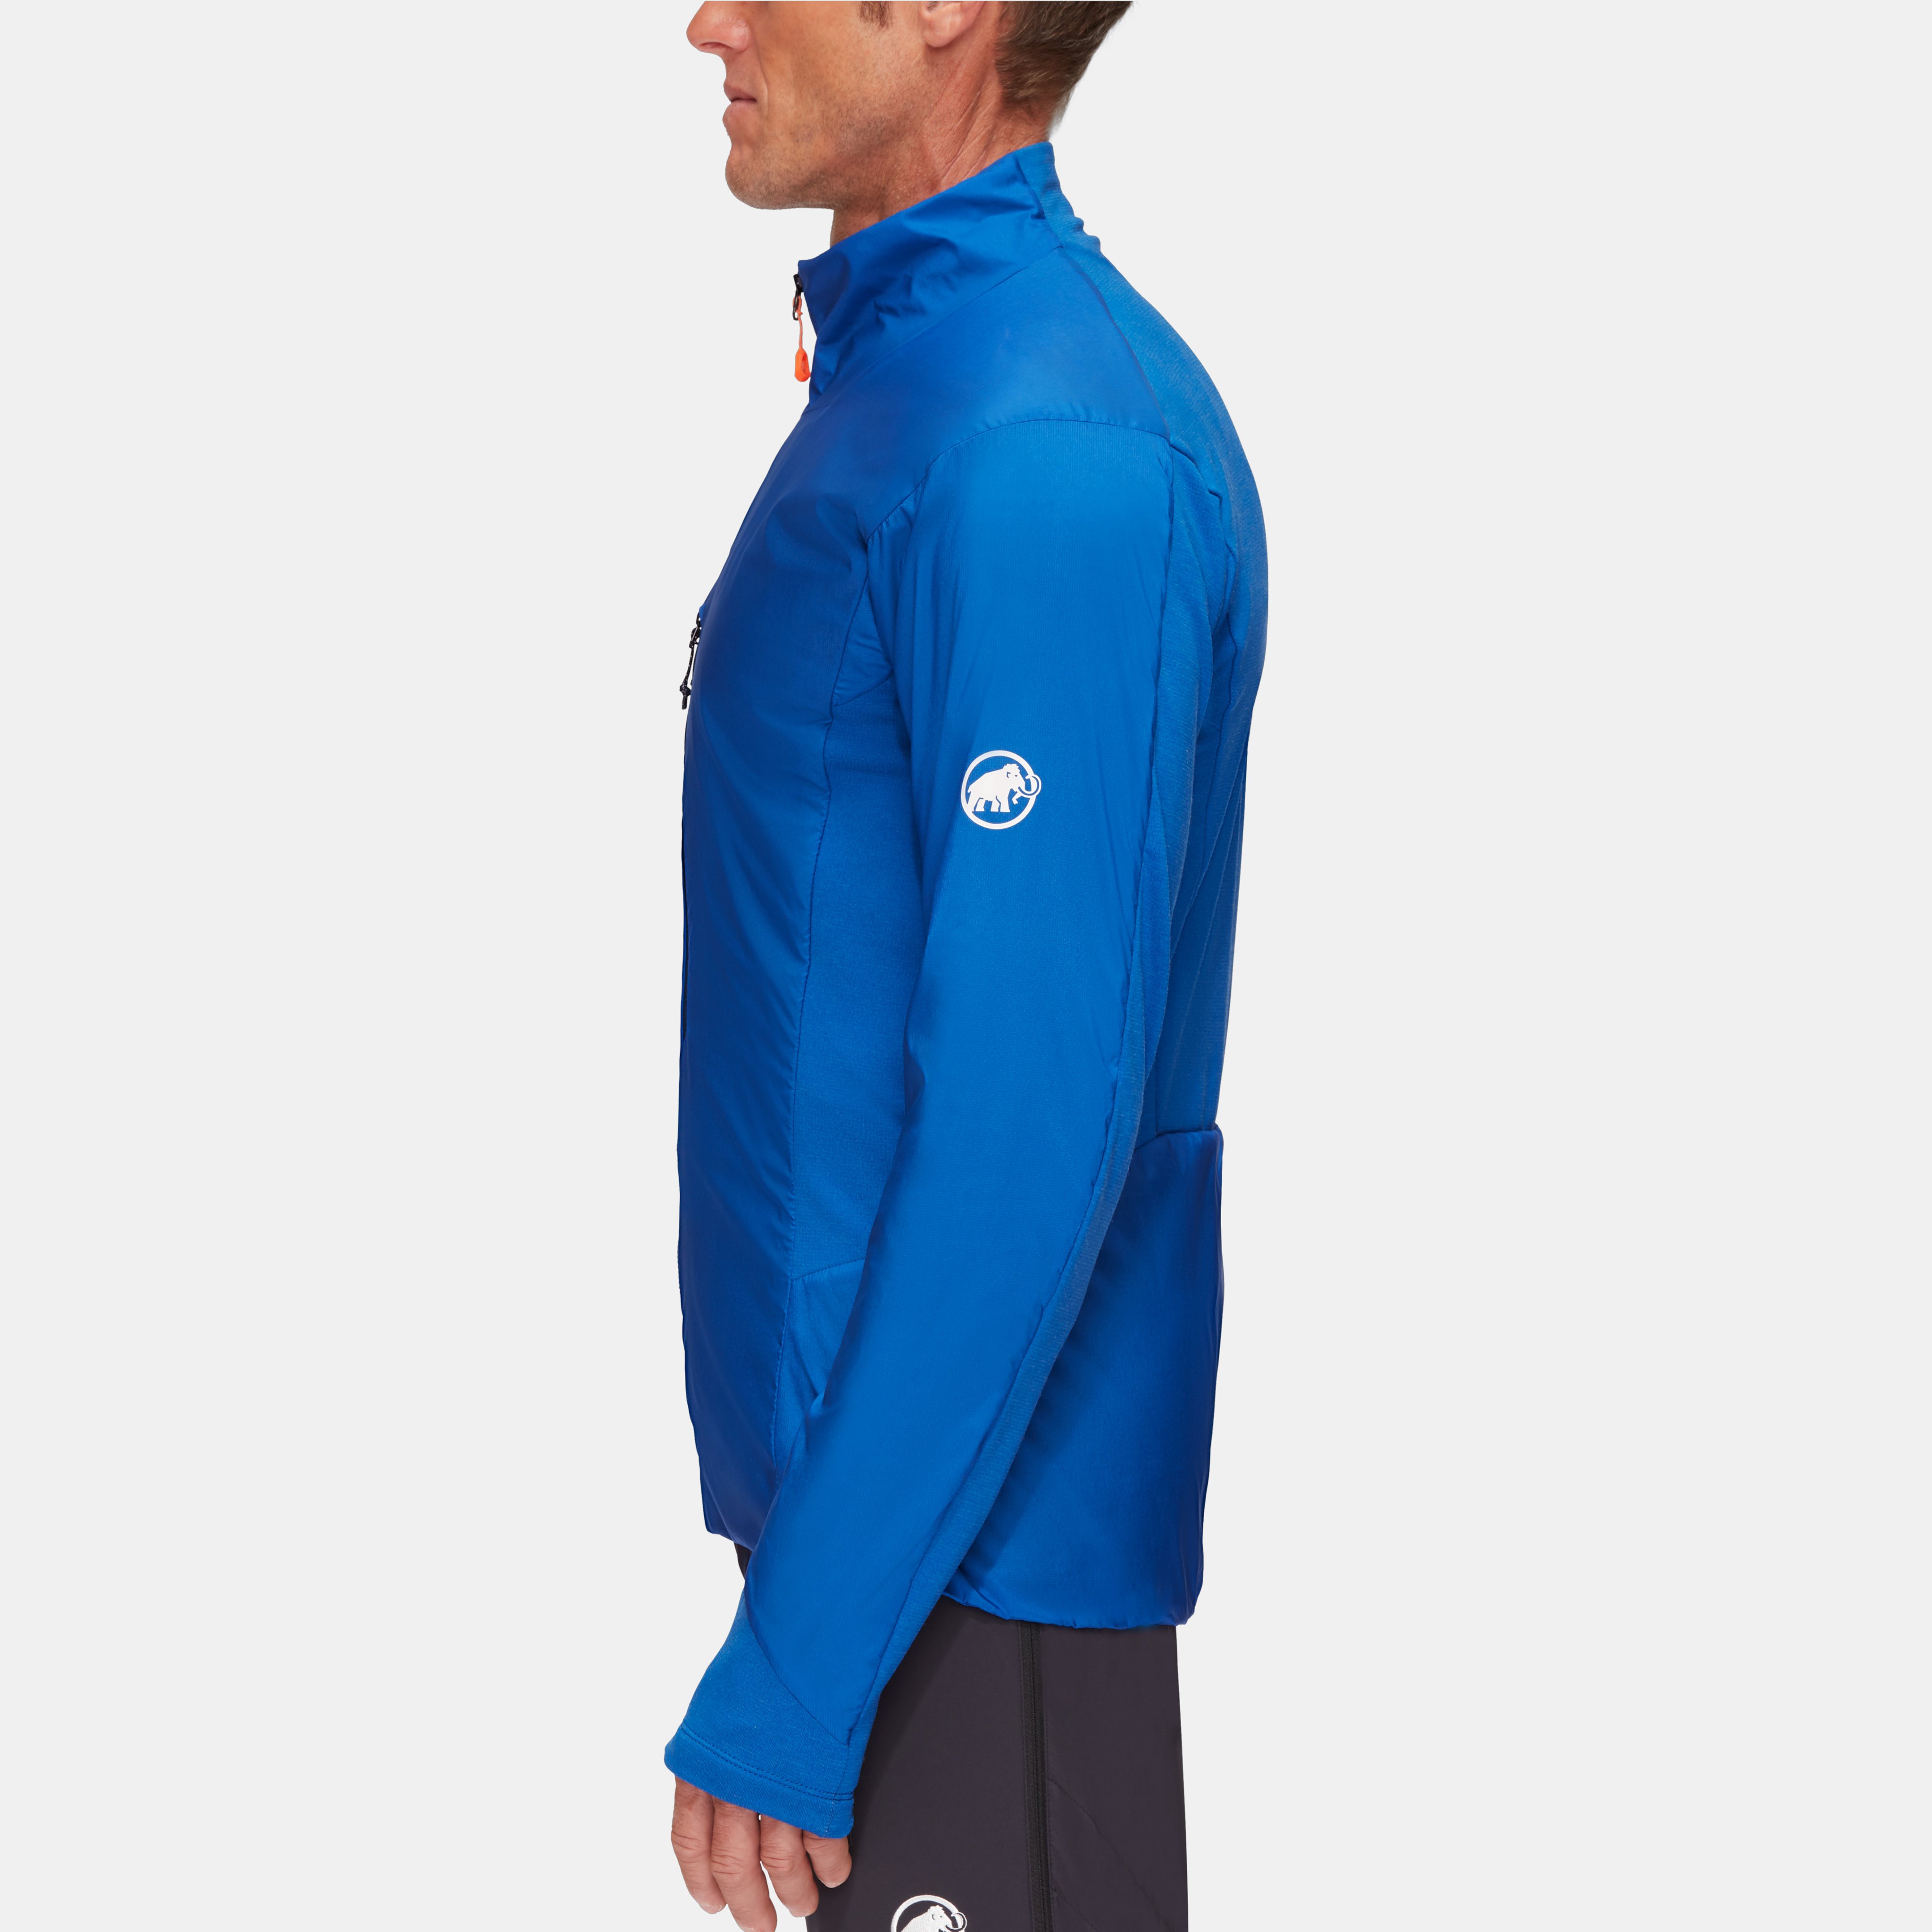 Eigerjoch IN Hybrid Jacket Men product image